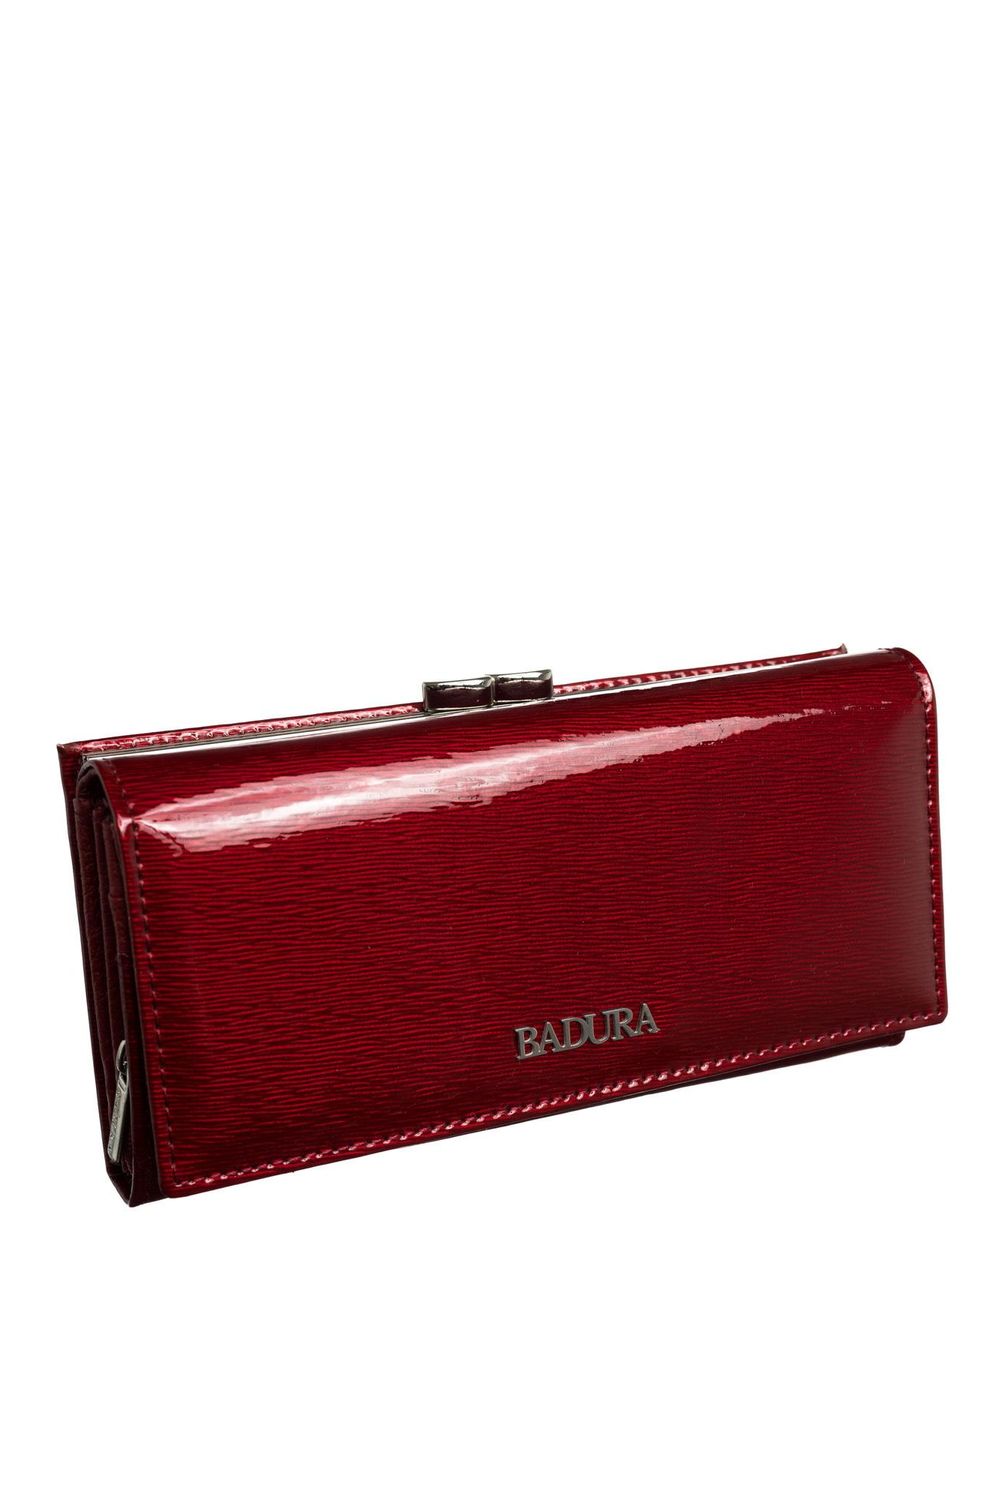 Badura dámská peněženka 160897 červená